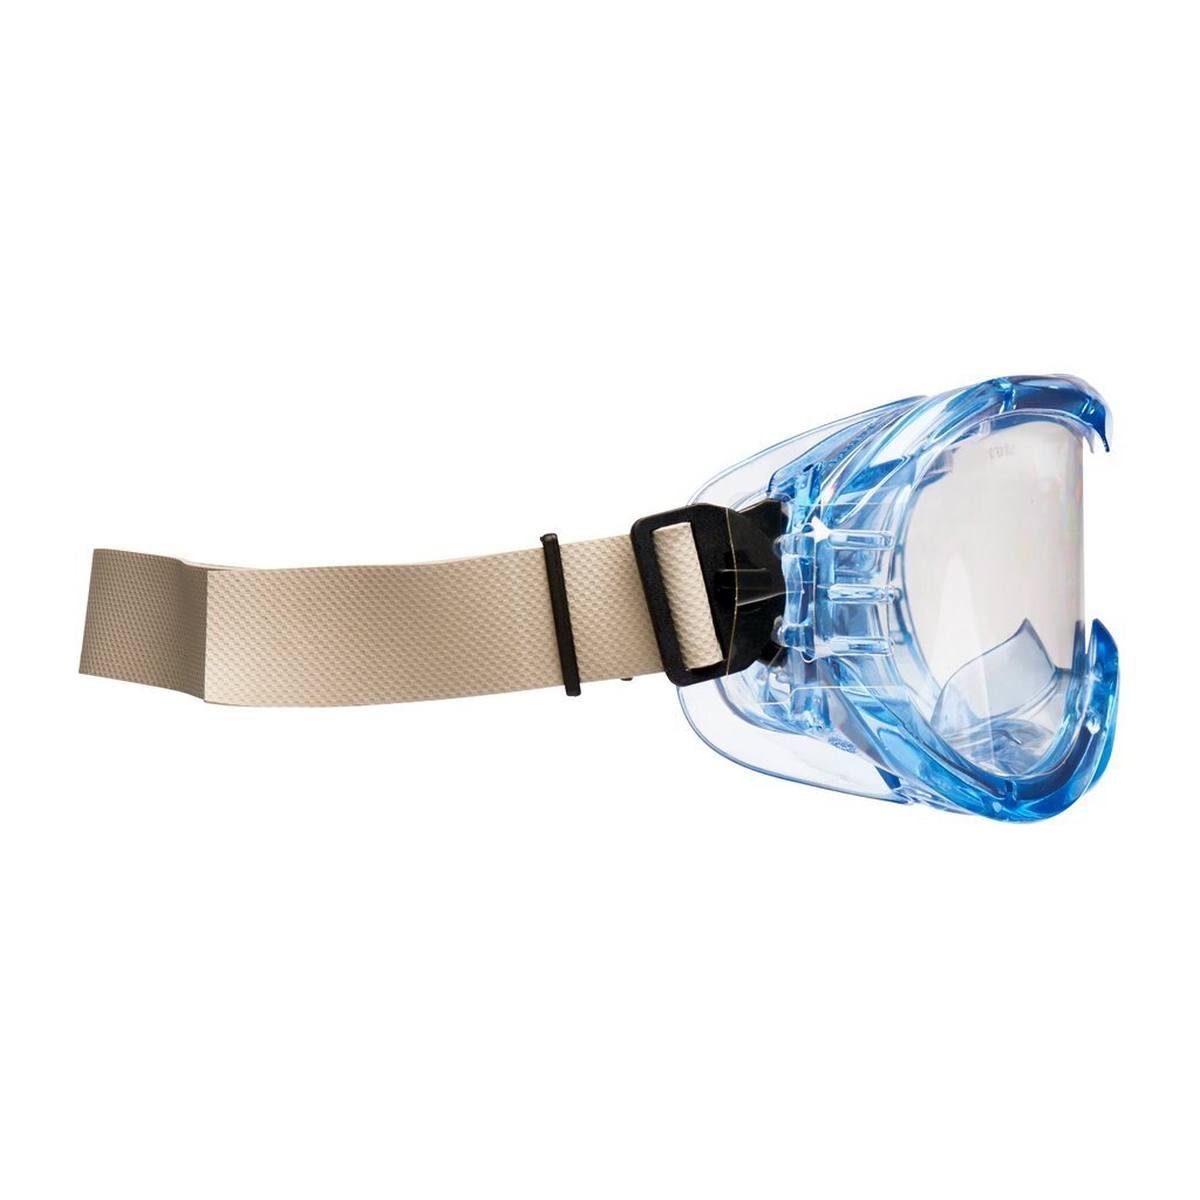 3M Fahrenheit Schutzbrille mit Acetat/Hardium-Beschichtung AS/AF/UV, PC, klar, indirekte Belüftung, Gummi-Kopfband, inkl. Mikrofaserbeutel FheitTNW